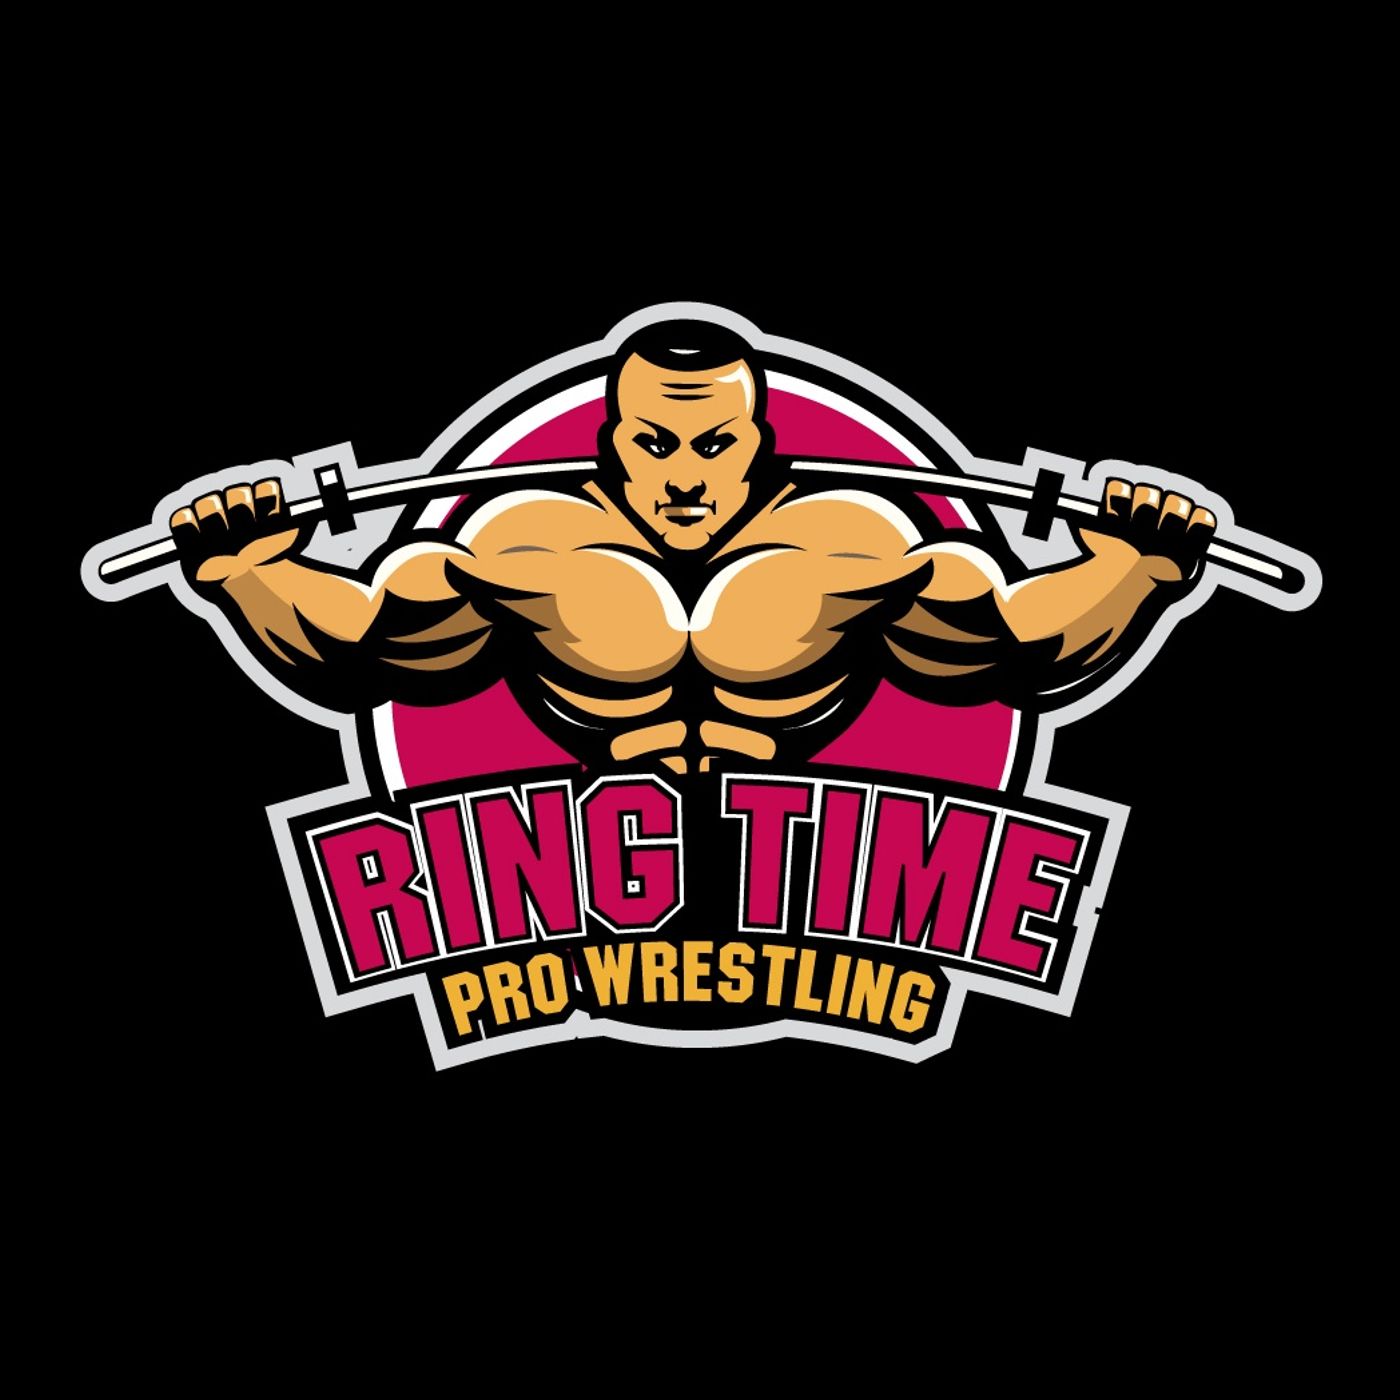 Ring Time Pro Wrestling's tracks